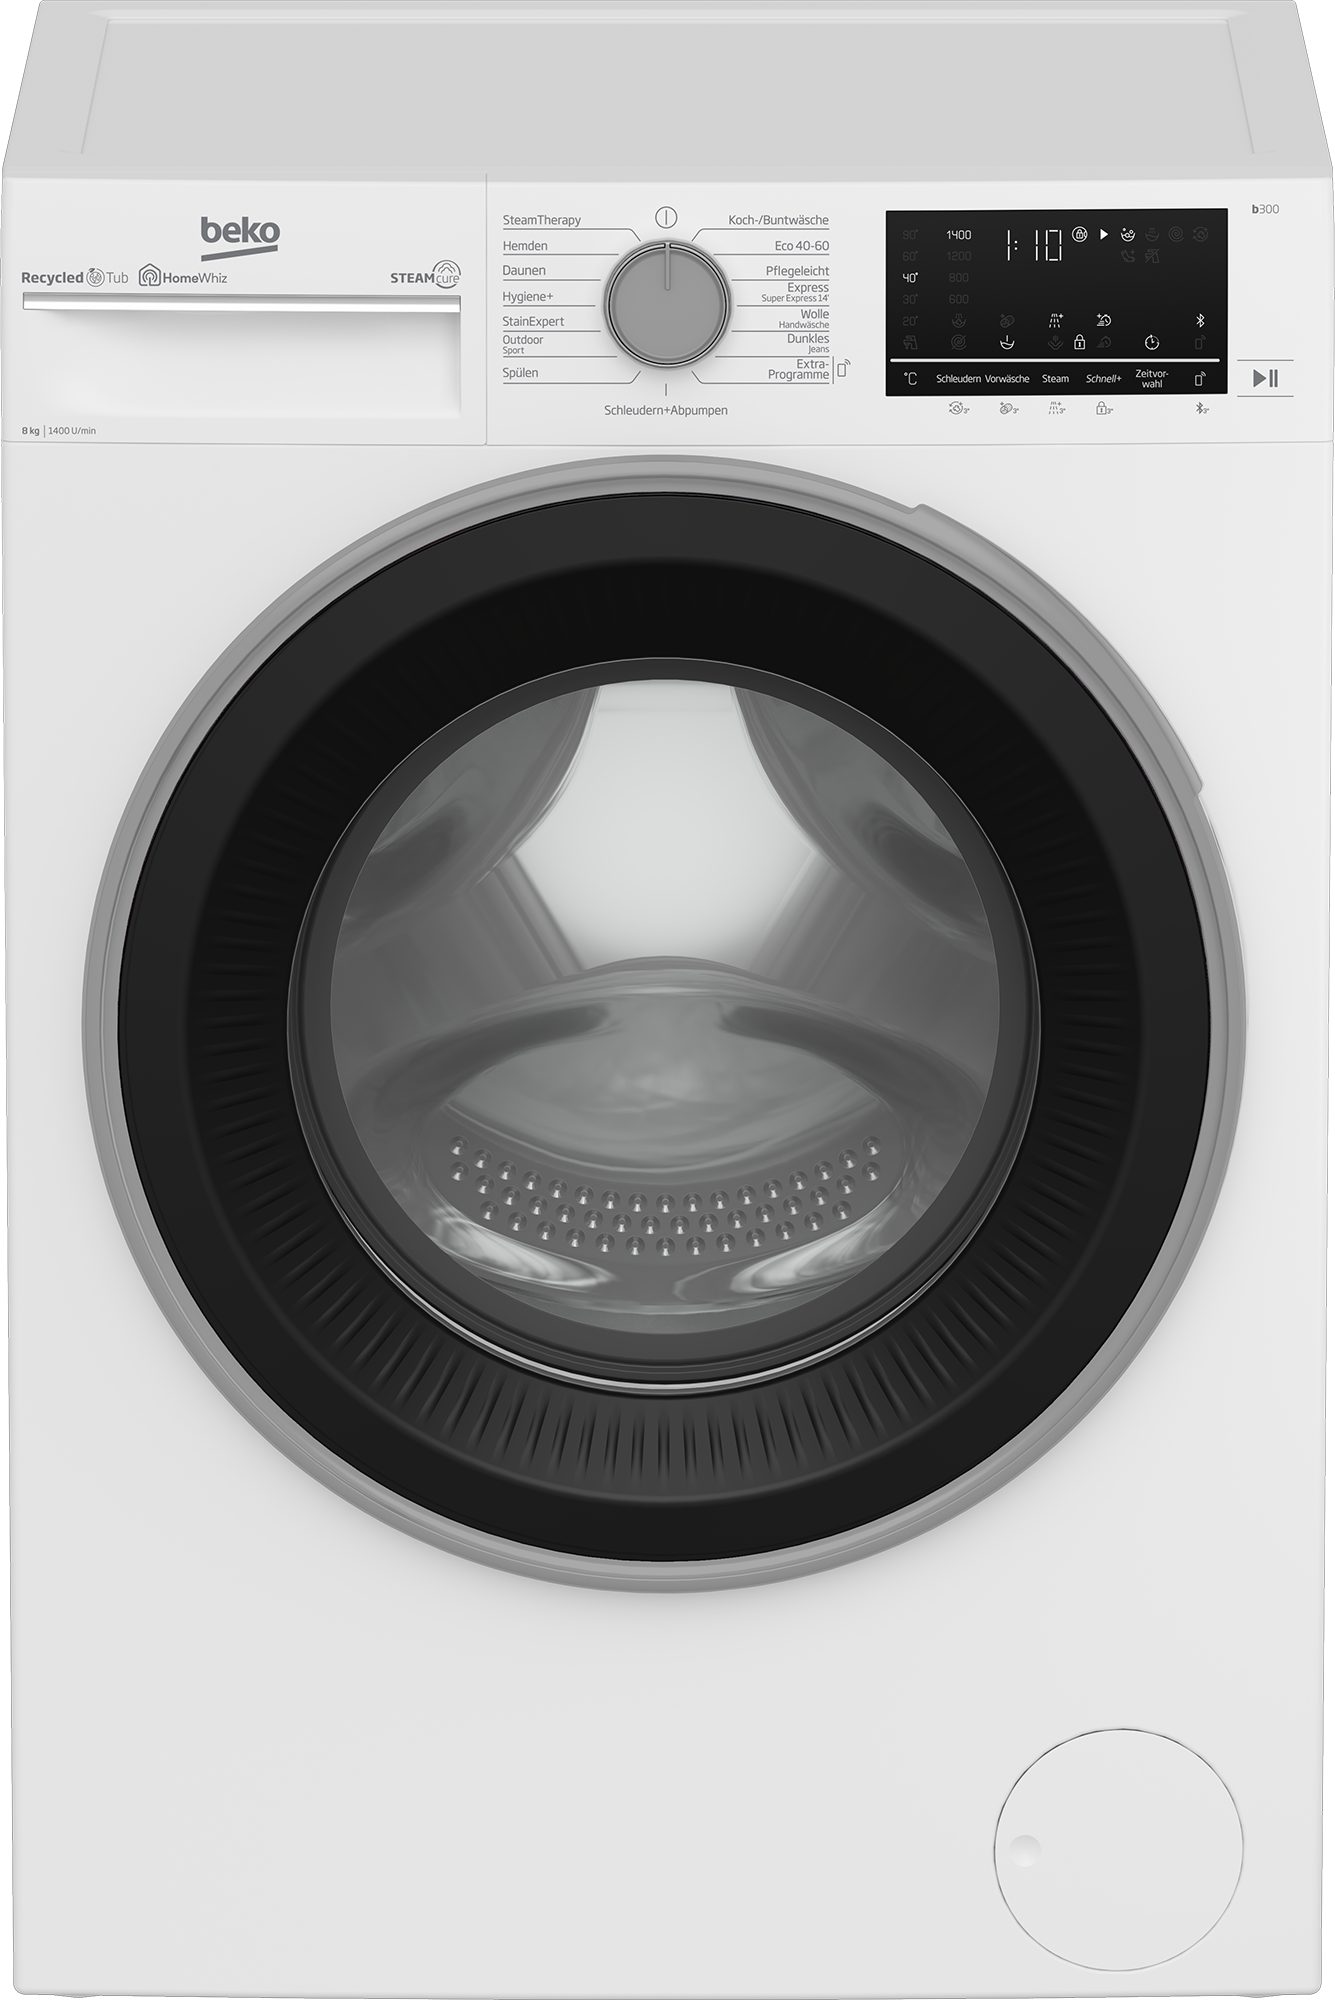 1400 Waschmaschine BEKO U/min, 99% allergenfrei kg, - b300 SteamCure B3WFU58415W1, 8